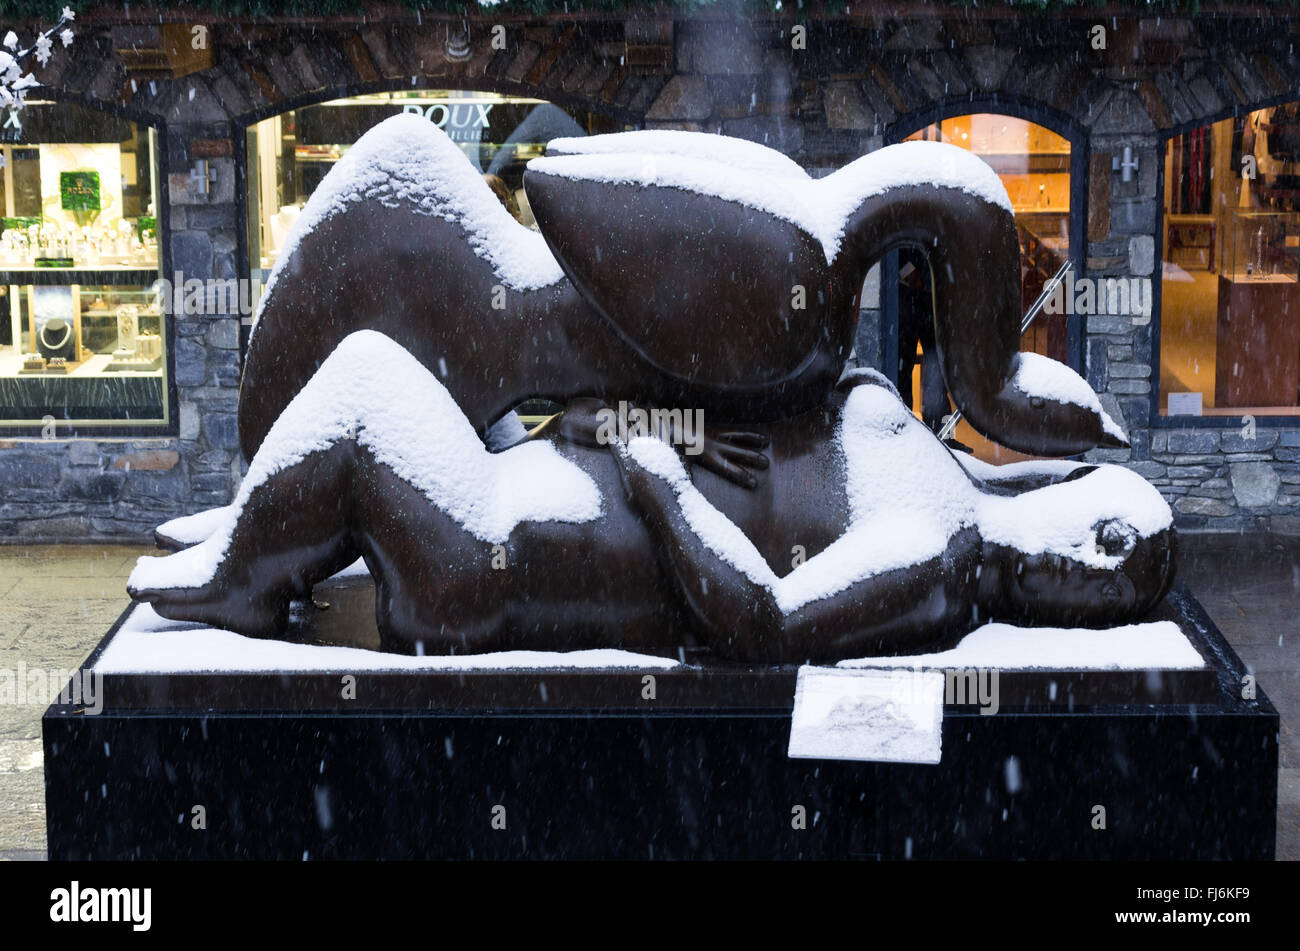 COURCHEVEL, Frankreich - JAN. 11: Skulptur des kolumbianischen Künstlers Botero in der Straße am 11. Januar 2011 in Courchevel, Frankreich angezeigt wird. Die französischen Kurort hat eine Invasion der russischen Millionär und Oligarch in den letzten 10 Jahren vor allem zur Weihnachtszeit kommen gesehen. Stockfoto